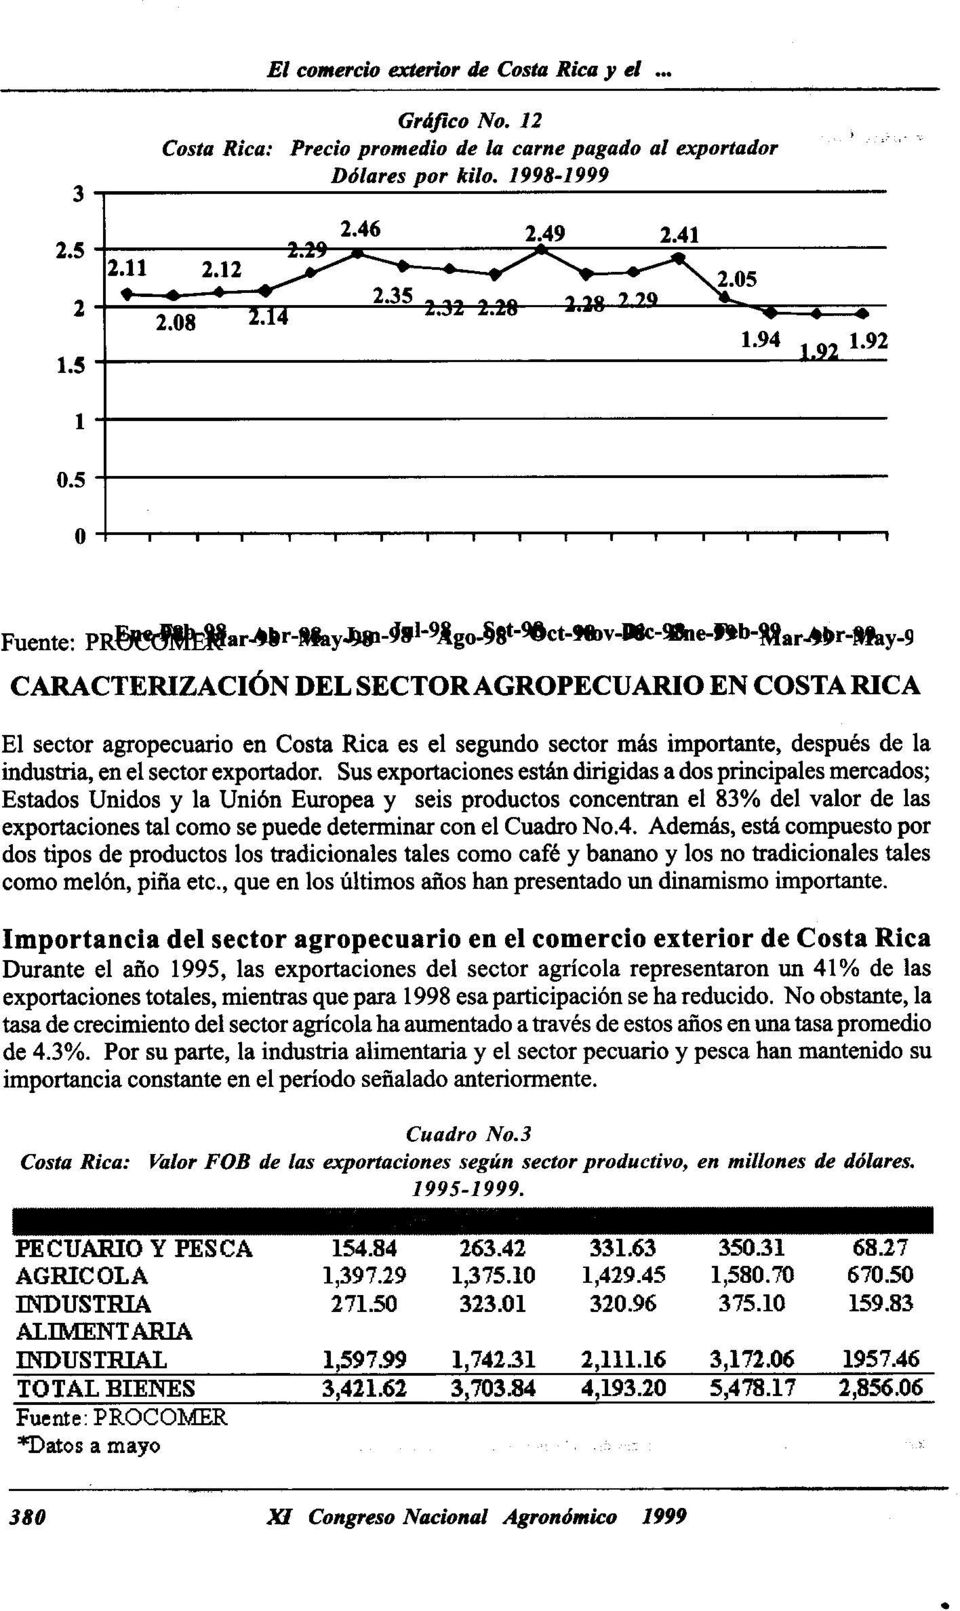 e-ftb-~ar"'~ r-tfa y-9 CARACTERIZACI6N DEL SECTORAGROPECUARIO EN COSTA RICA El sector agropecuario en Costa Rica es el segundo sector mas importante, despues de la industria, en el sector exportador.